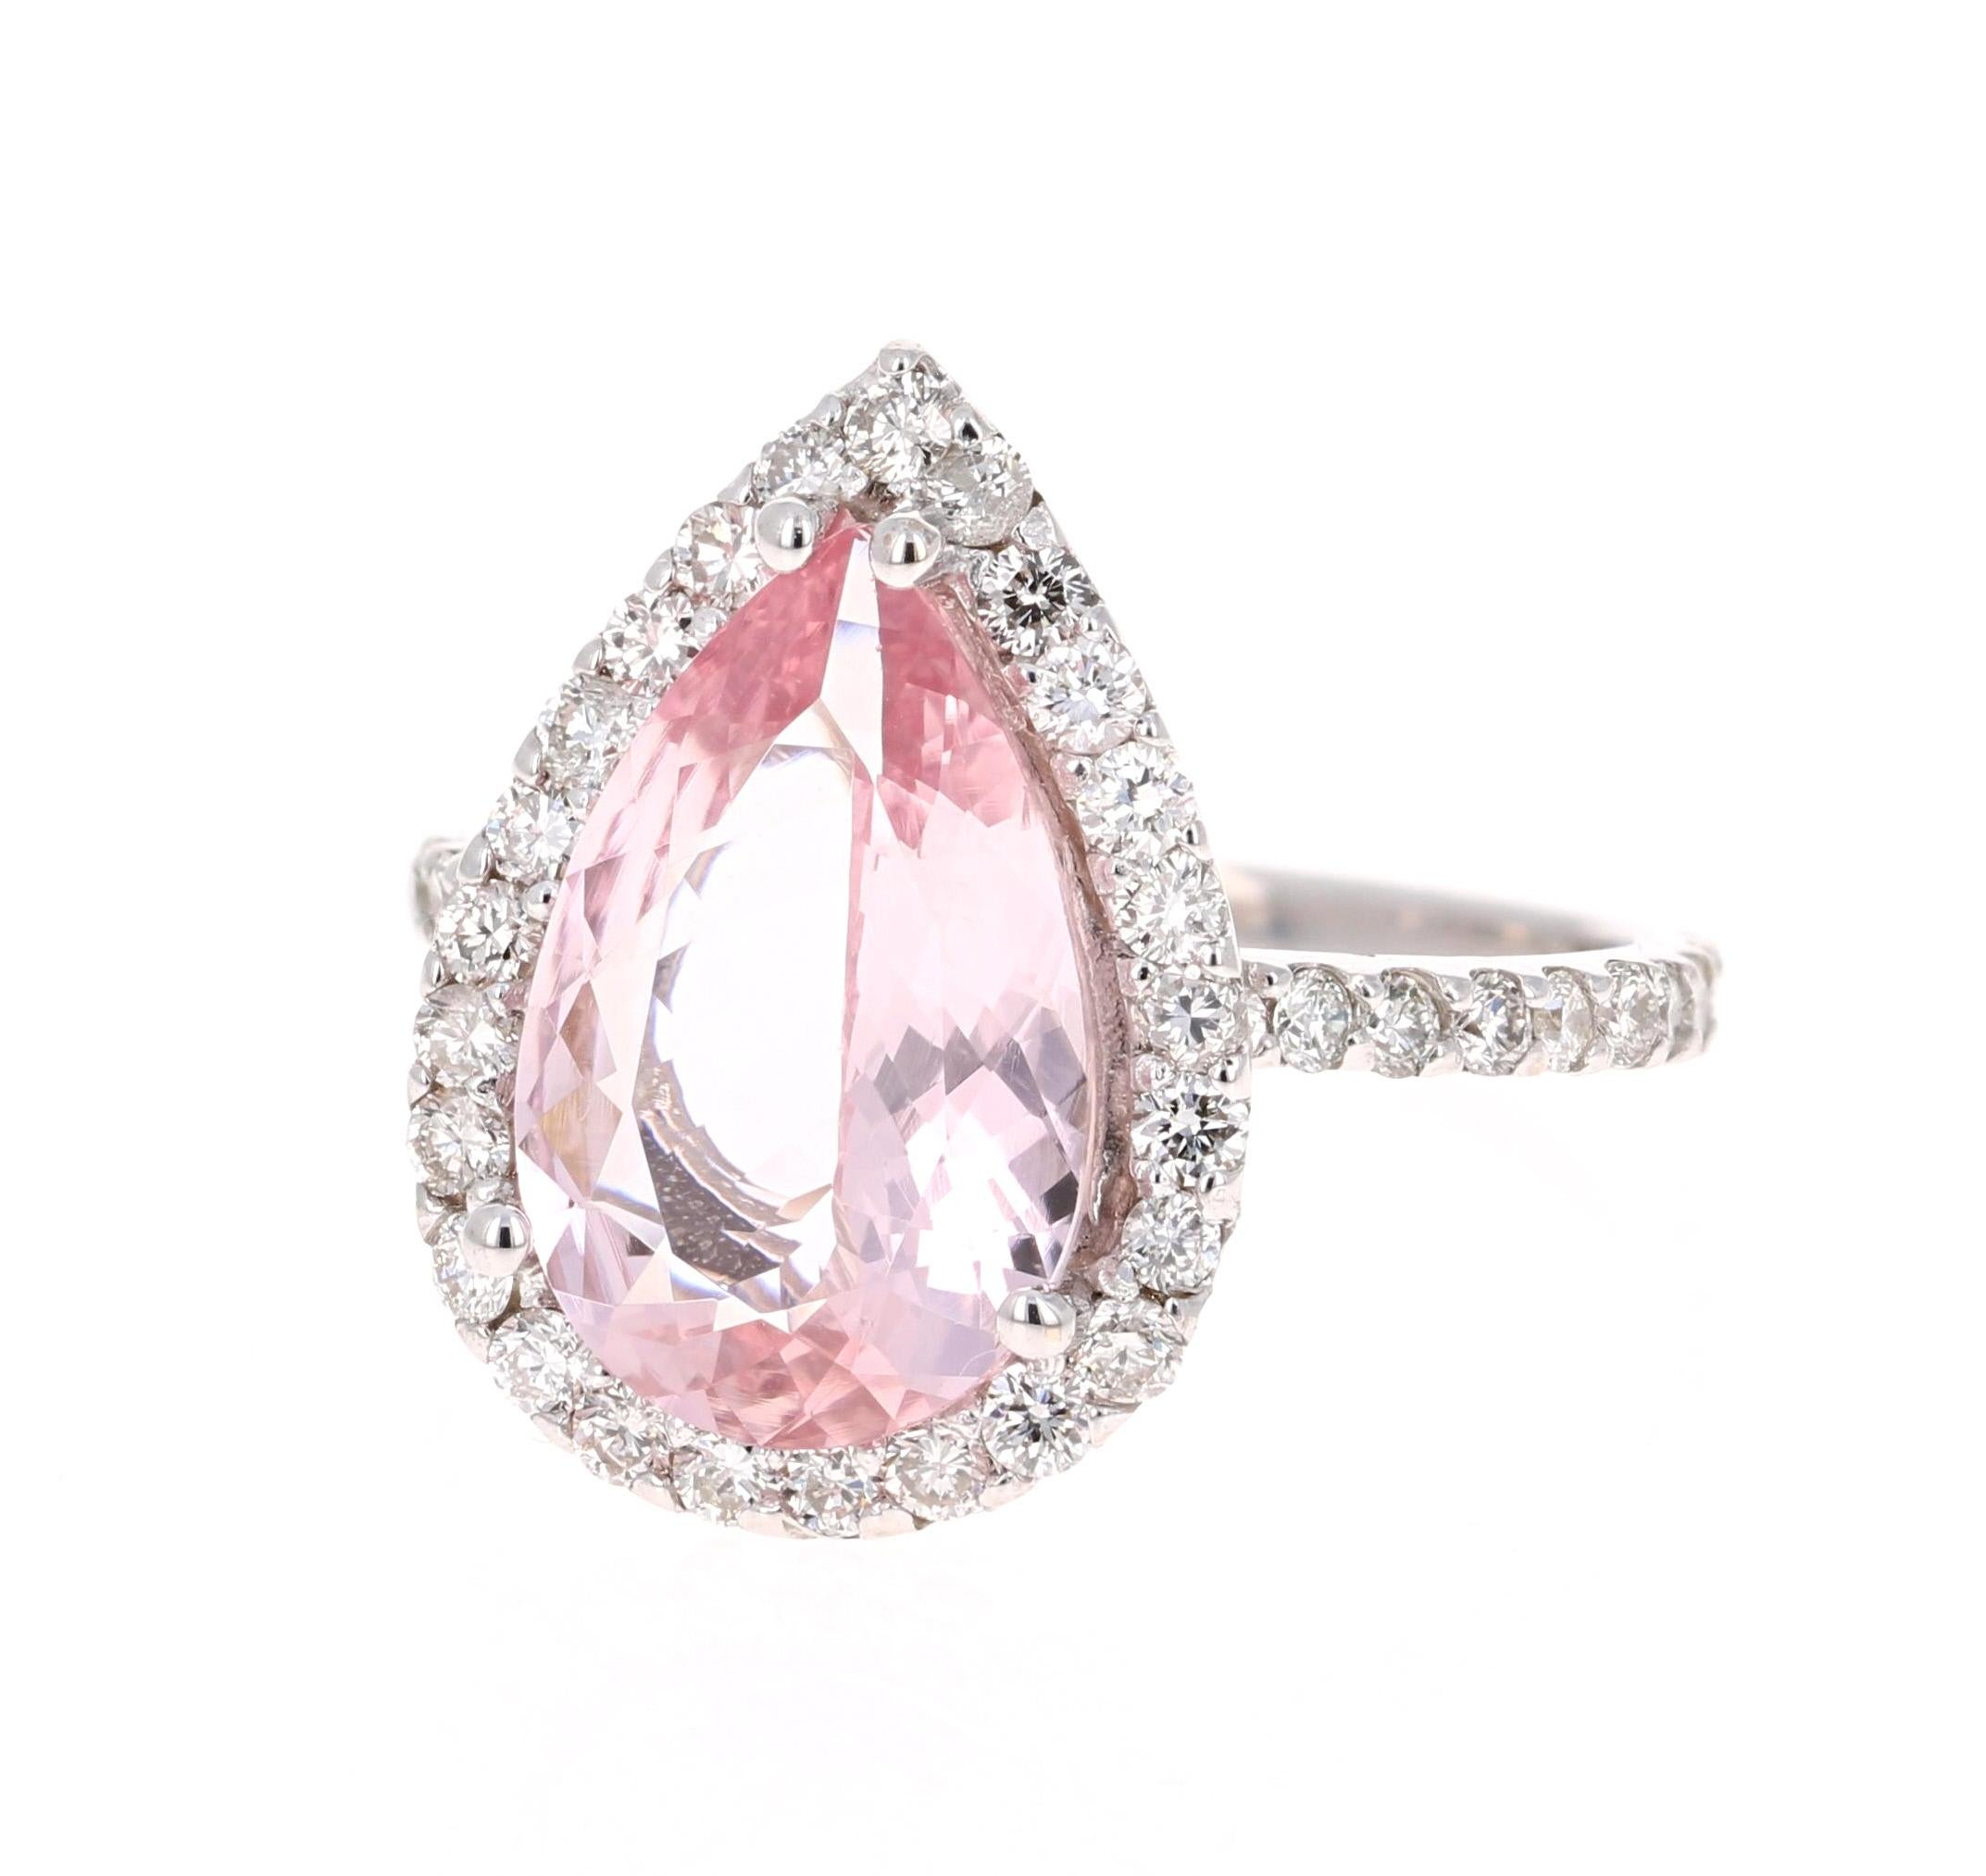 Modern 4.11 Carat Pear Cut Pink Morganite Diamond 18 Karat White Gold Engagement Ring